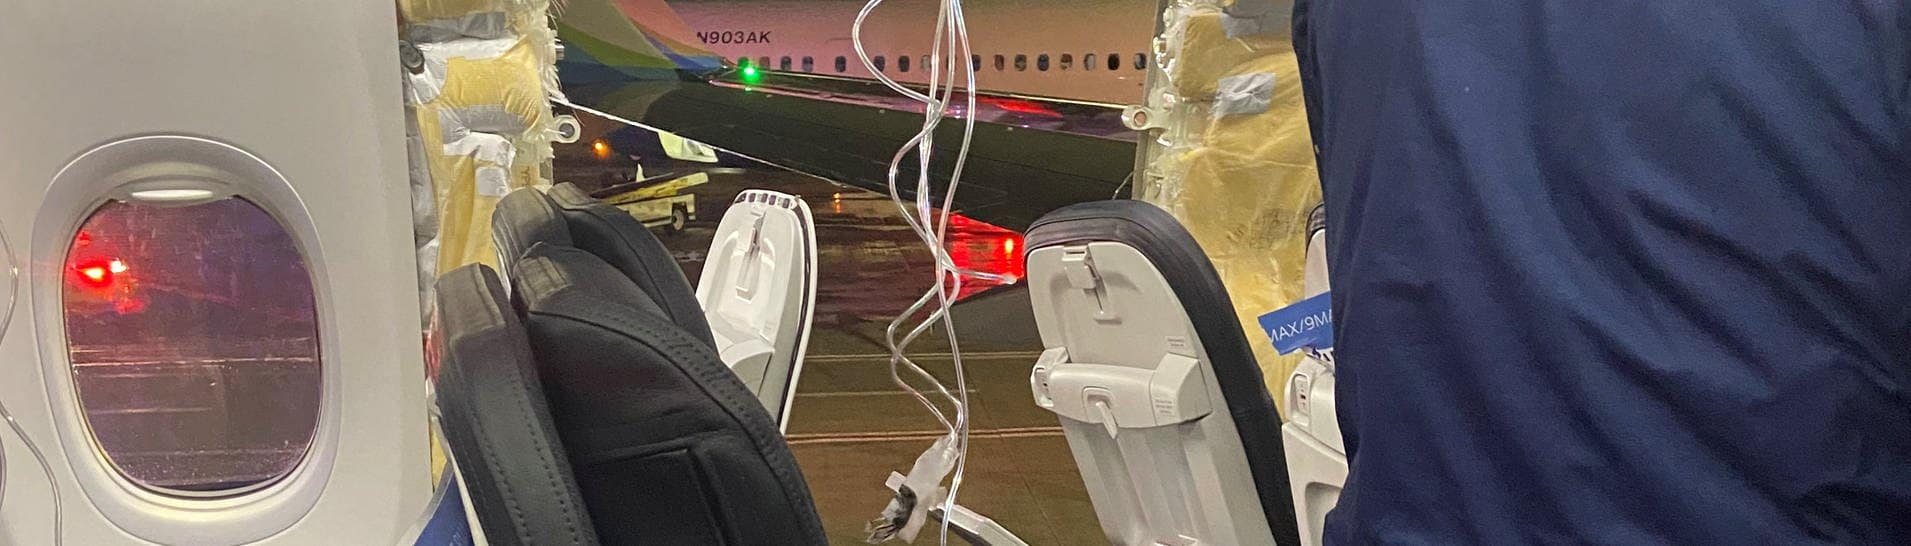 Sauerstoffmasken hängen vor dem Loch in der Wand eines Flugzeugs der Alaska Airlines (Foto: Reuters, Kyle Rinker via X/via REUTERS)